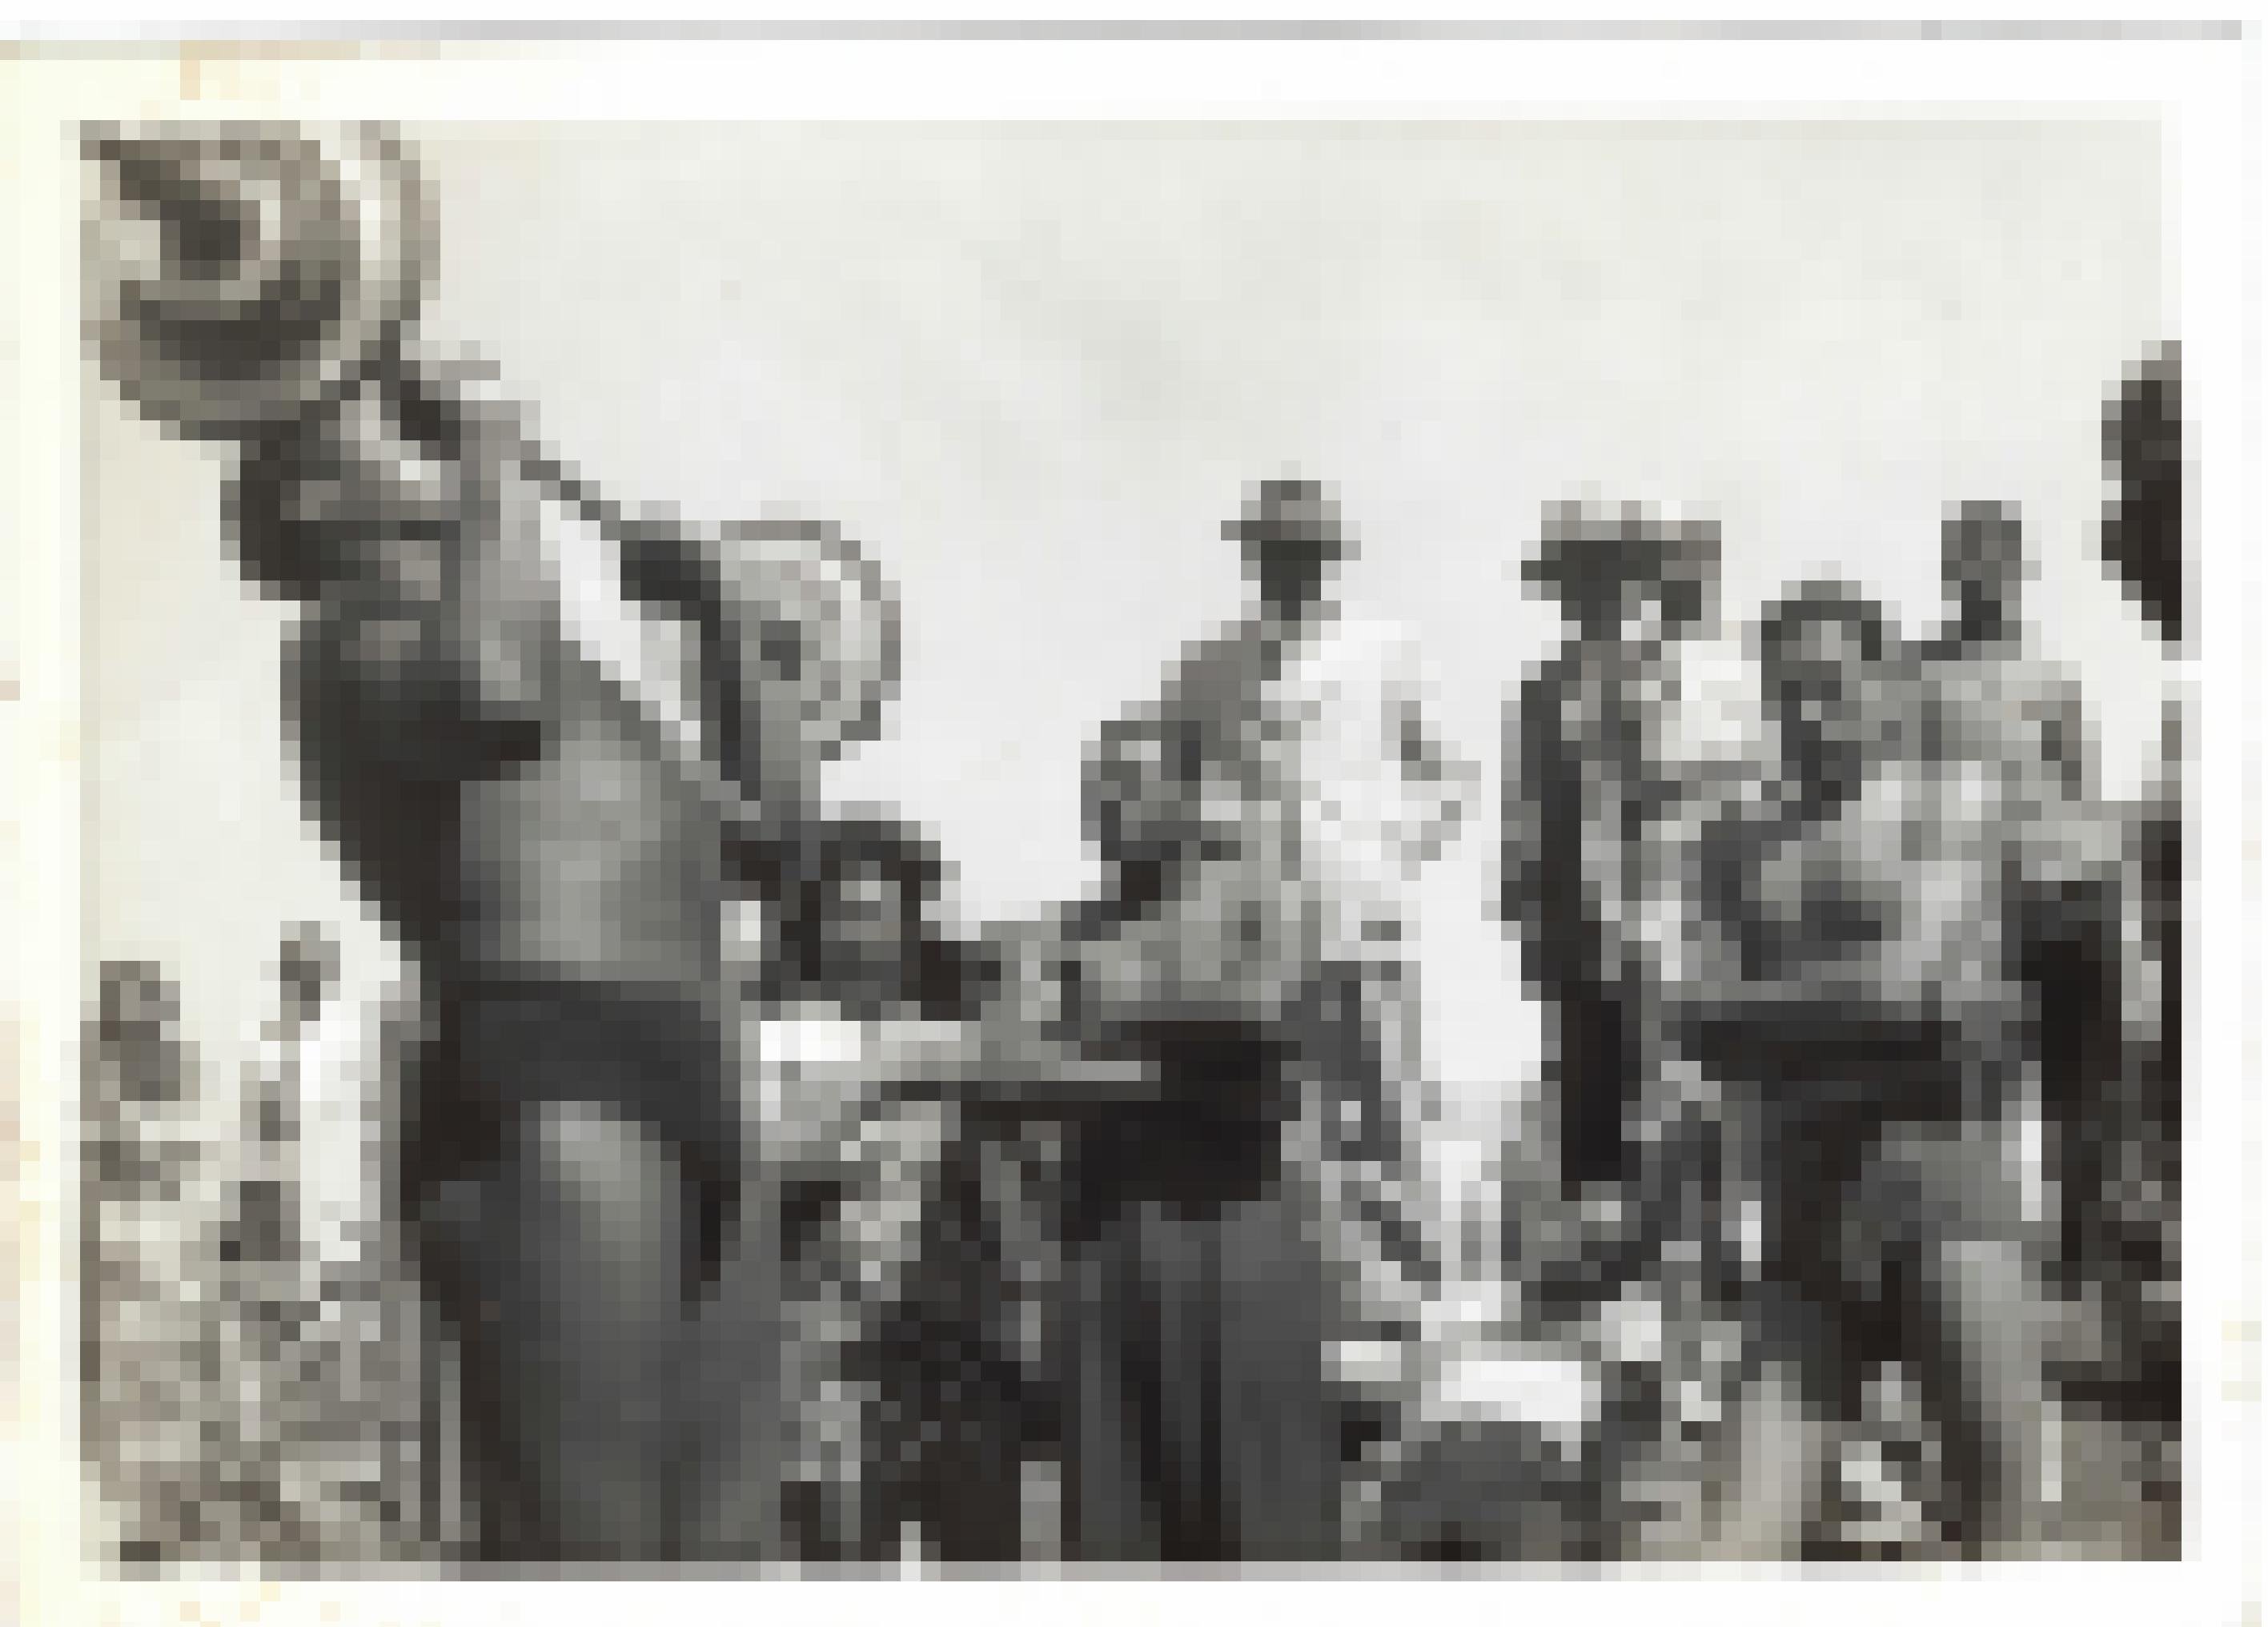 Ein Mann mit freiem Oberkörper und Badehose stemmt eine Hantel vor Freunden und Neugierigen, manche in Sommerkleidern, andere ebenfalls in Schwimmkleidung. Alle sind Schwarz. Aufgenommen ca. 1945–1950